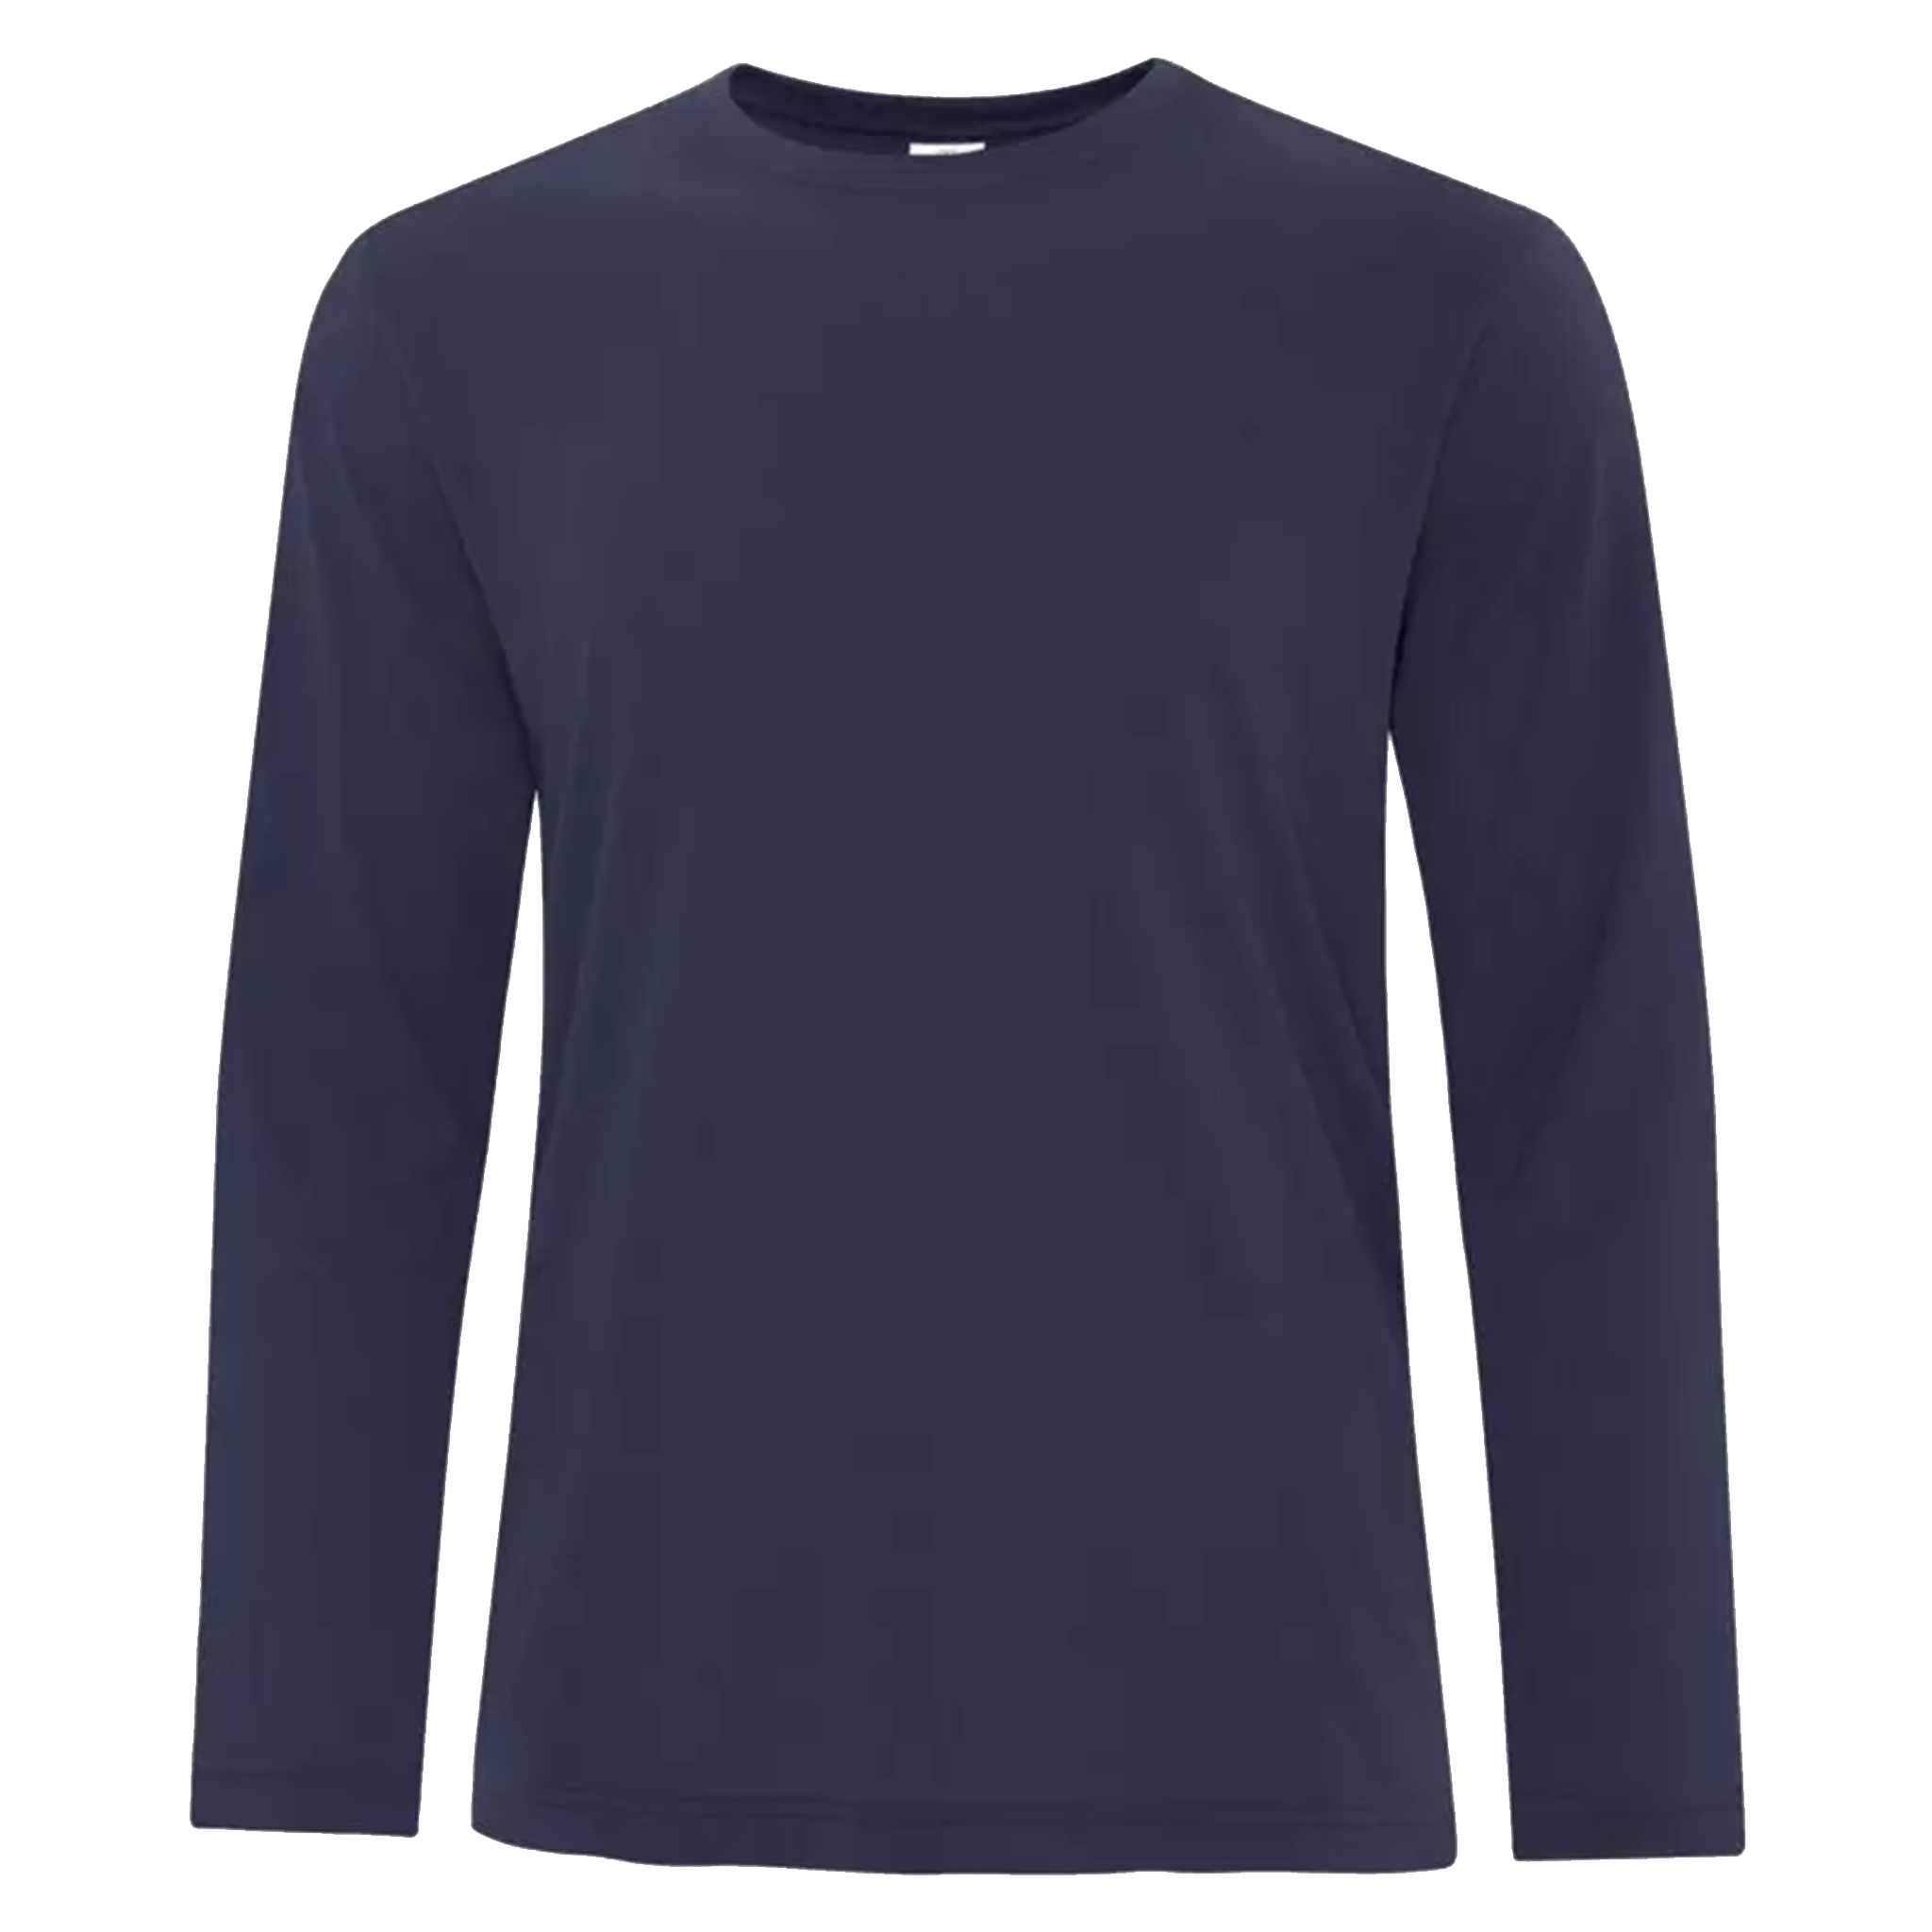 ATC Pro Spun Long Sleeve T-Shirt - Men's Sizing XS-4XL - Navy